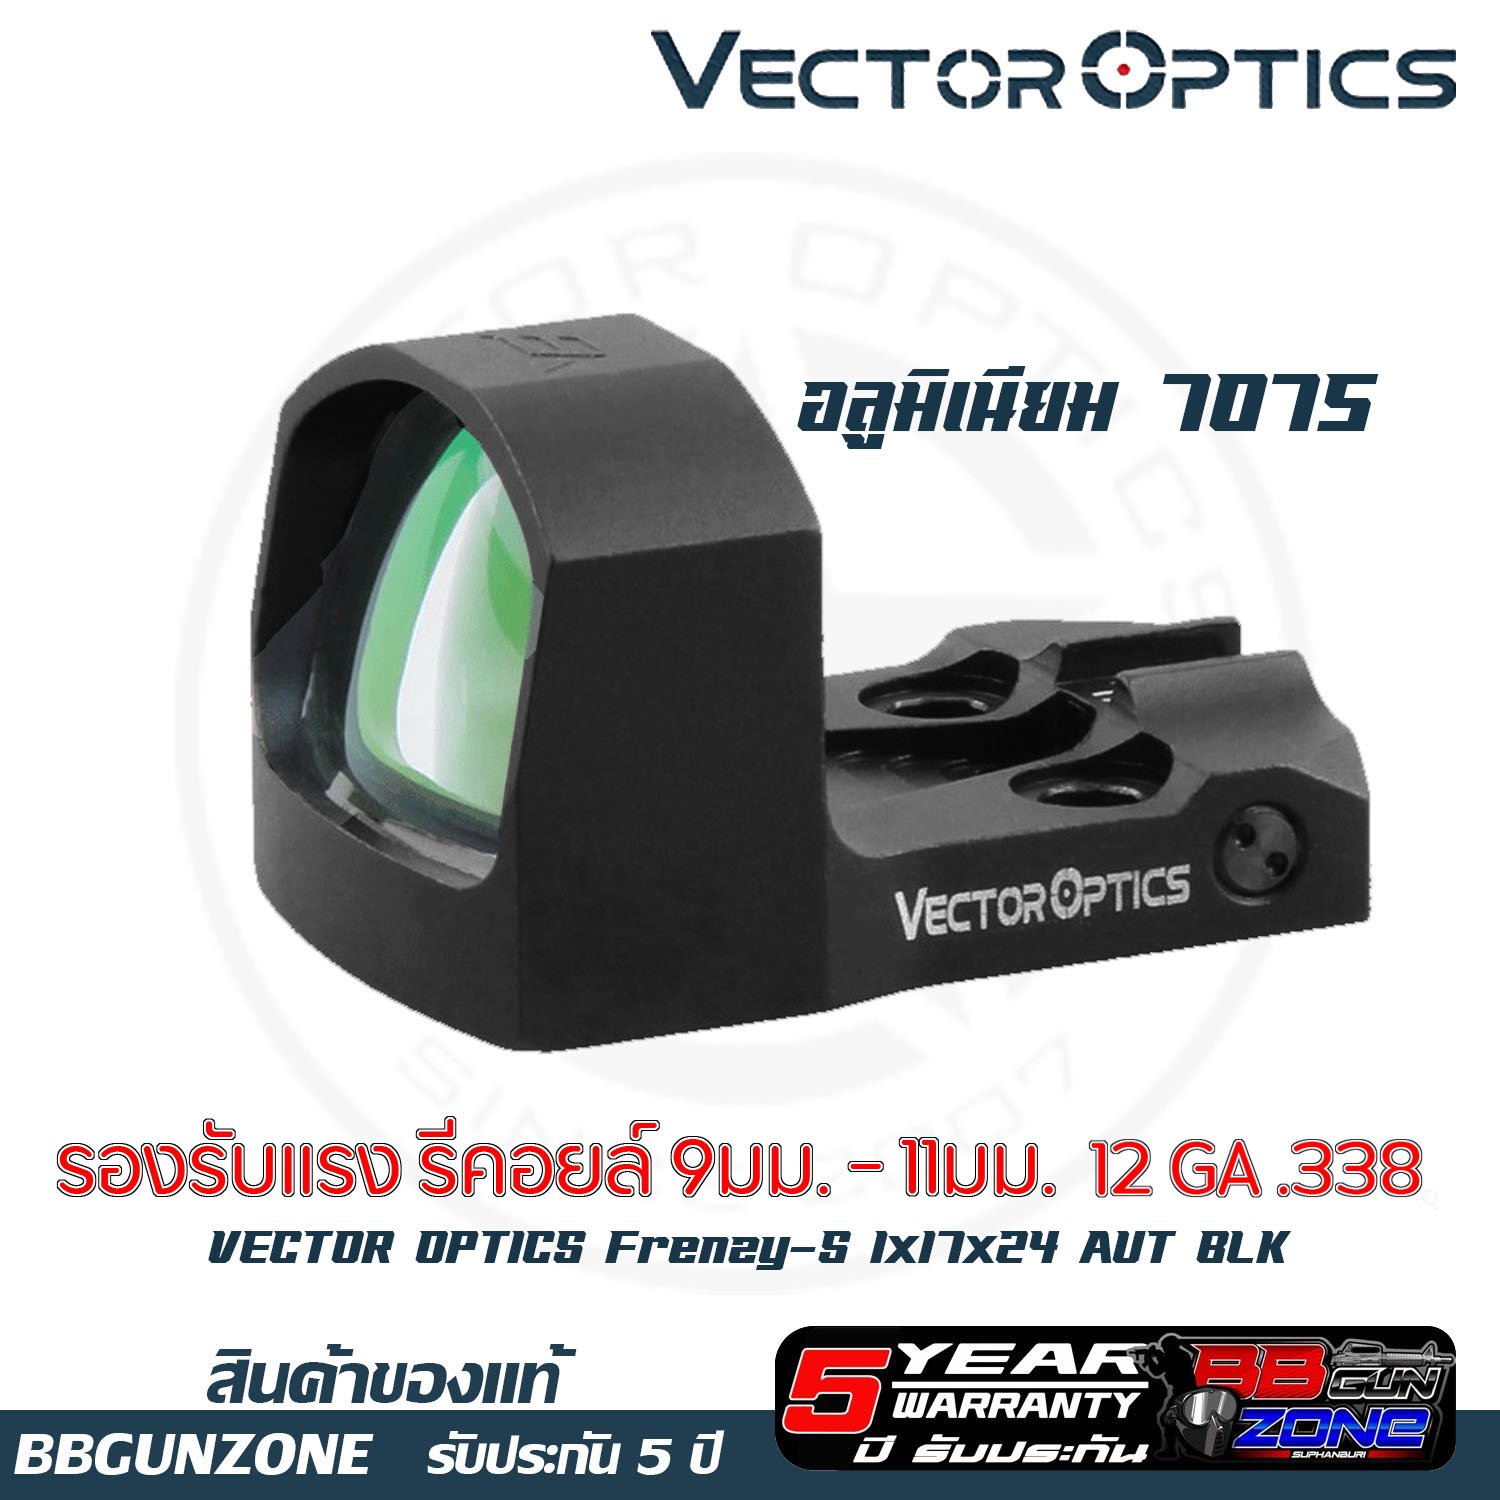 Vector Optics  Frenzy-S 1x17x24 AUT BLK